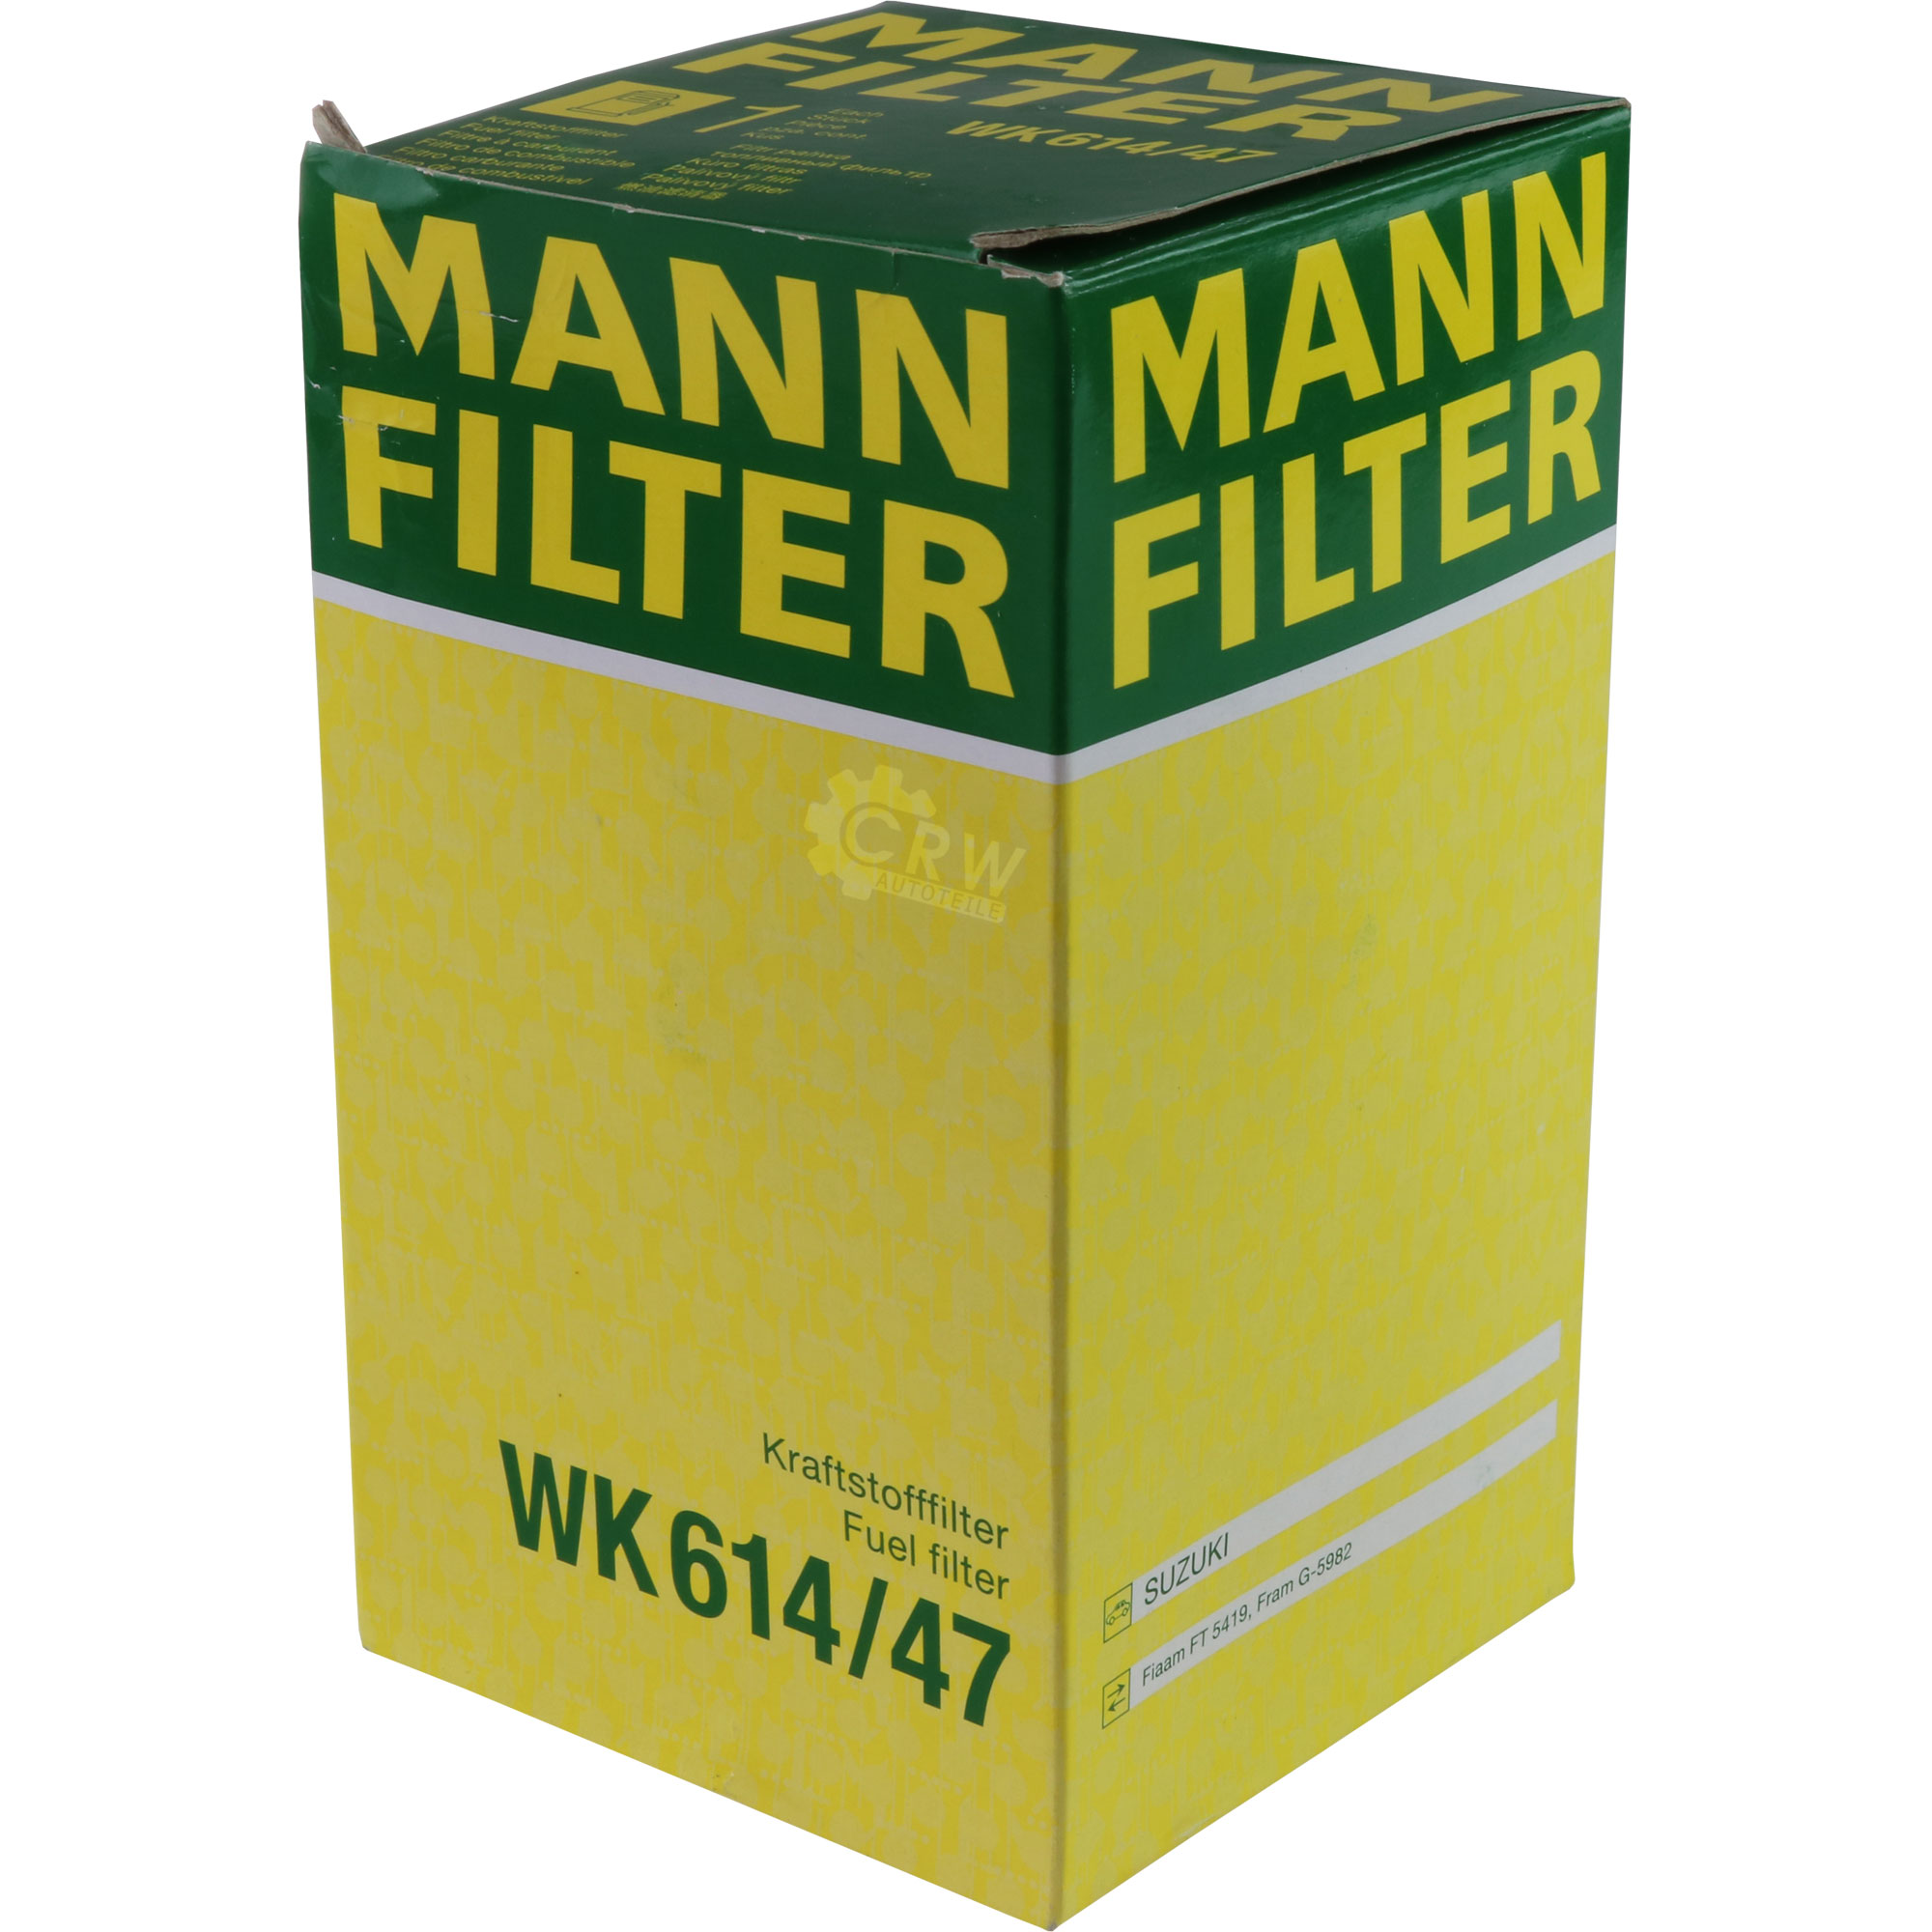 MANN-FILTER Kraftstofffilter WK 614/47 Fuel Filter